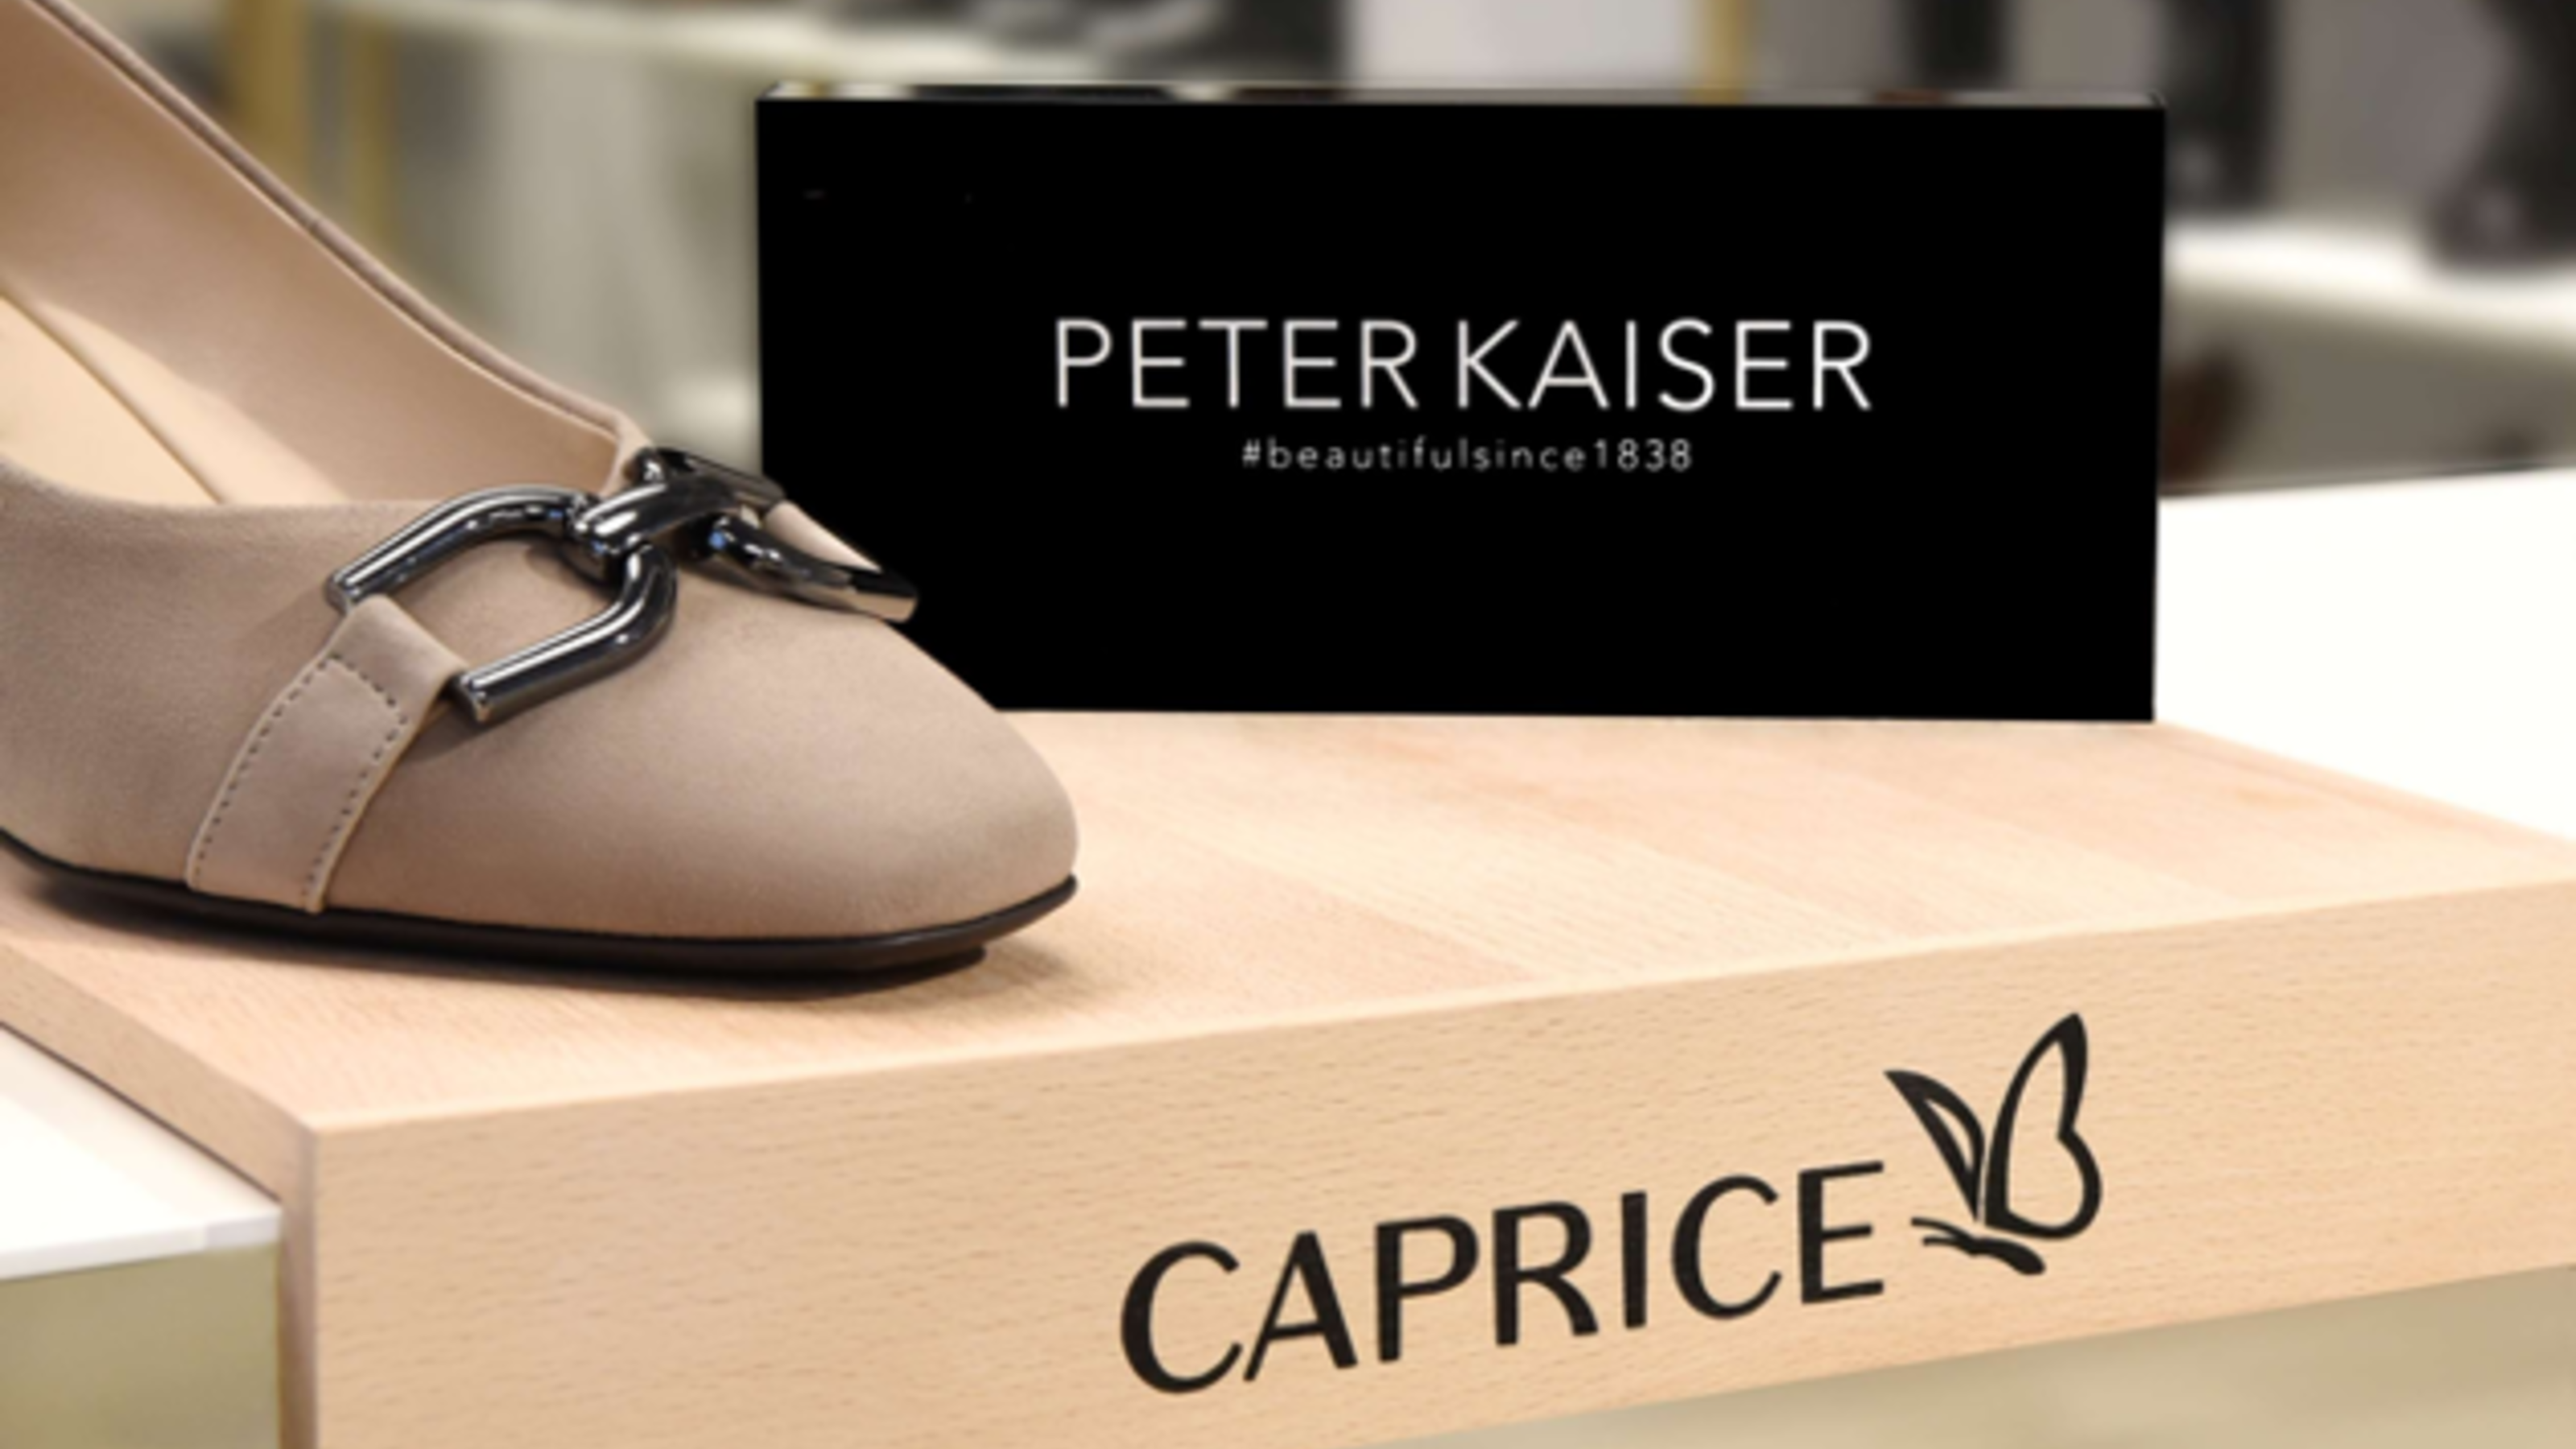 CAPRICE neemt PETER KAISER over, een van de meest traditionele schoenenmerken van Europa.